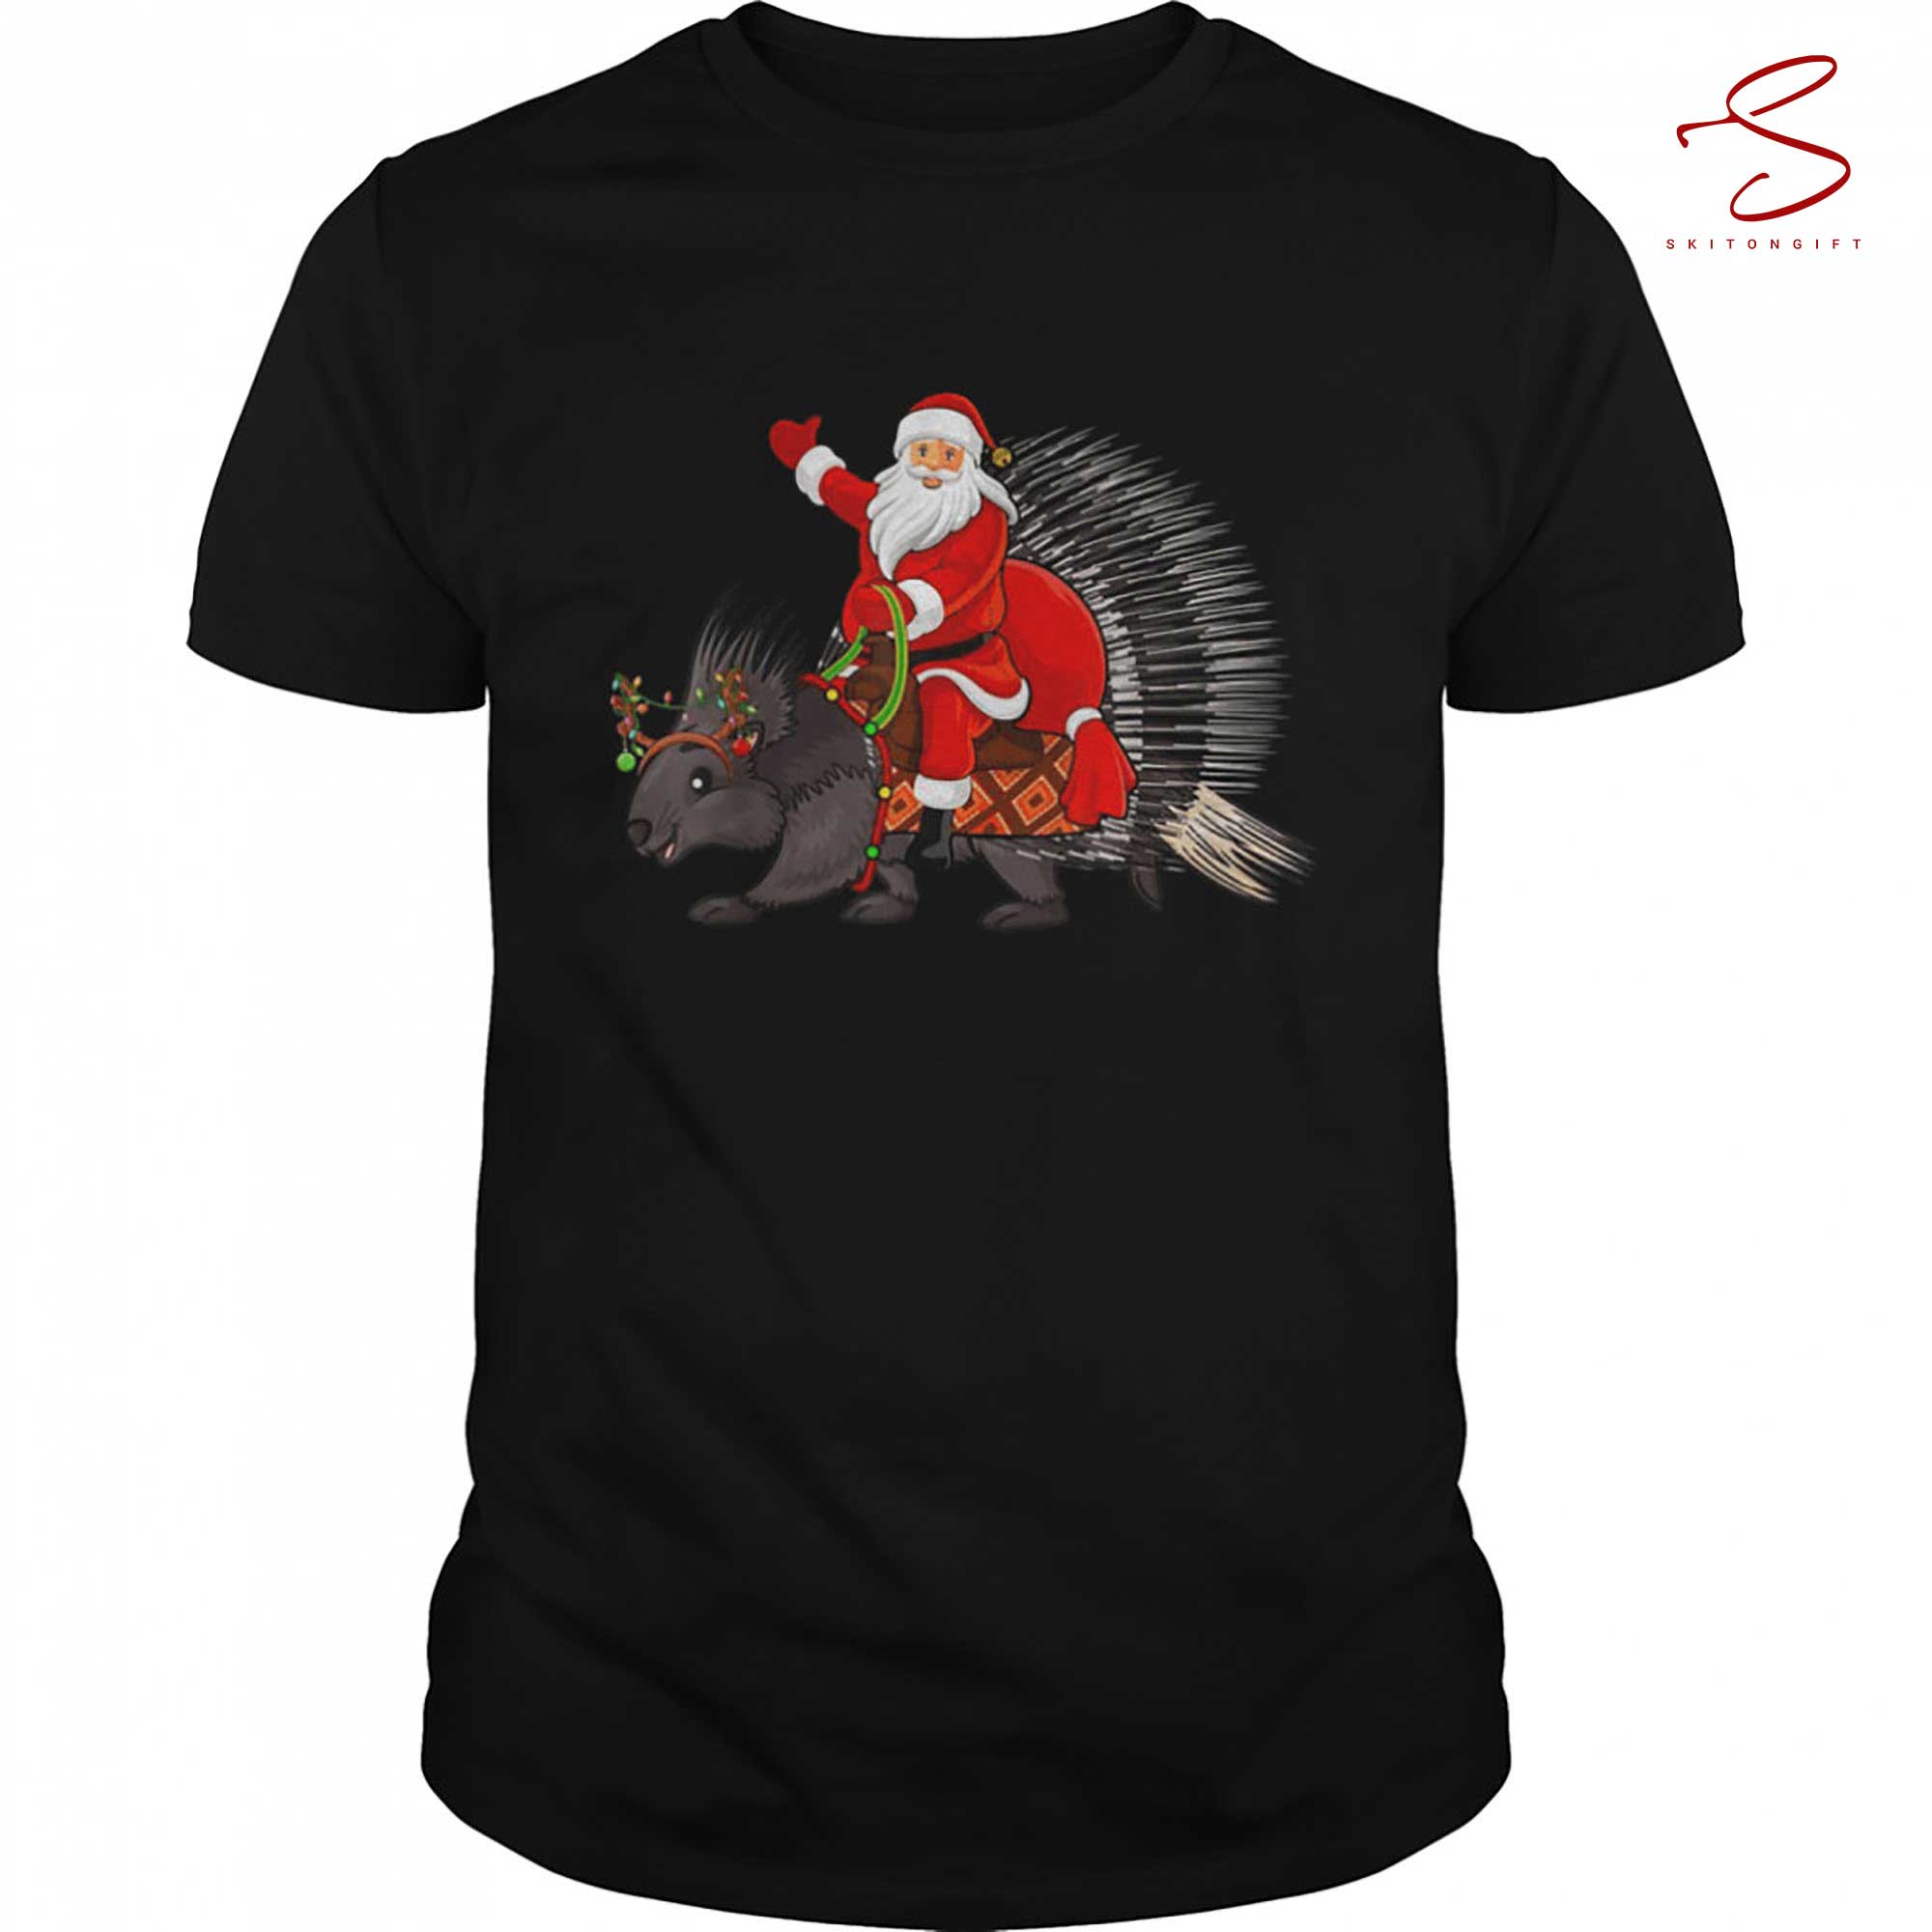 Skitongift Xmas Family Matching Santa Riding Christmas Shirt